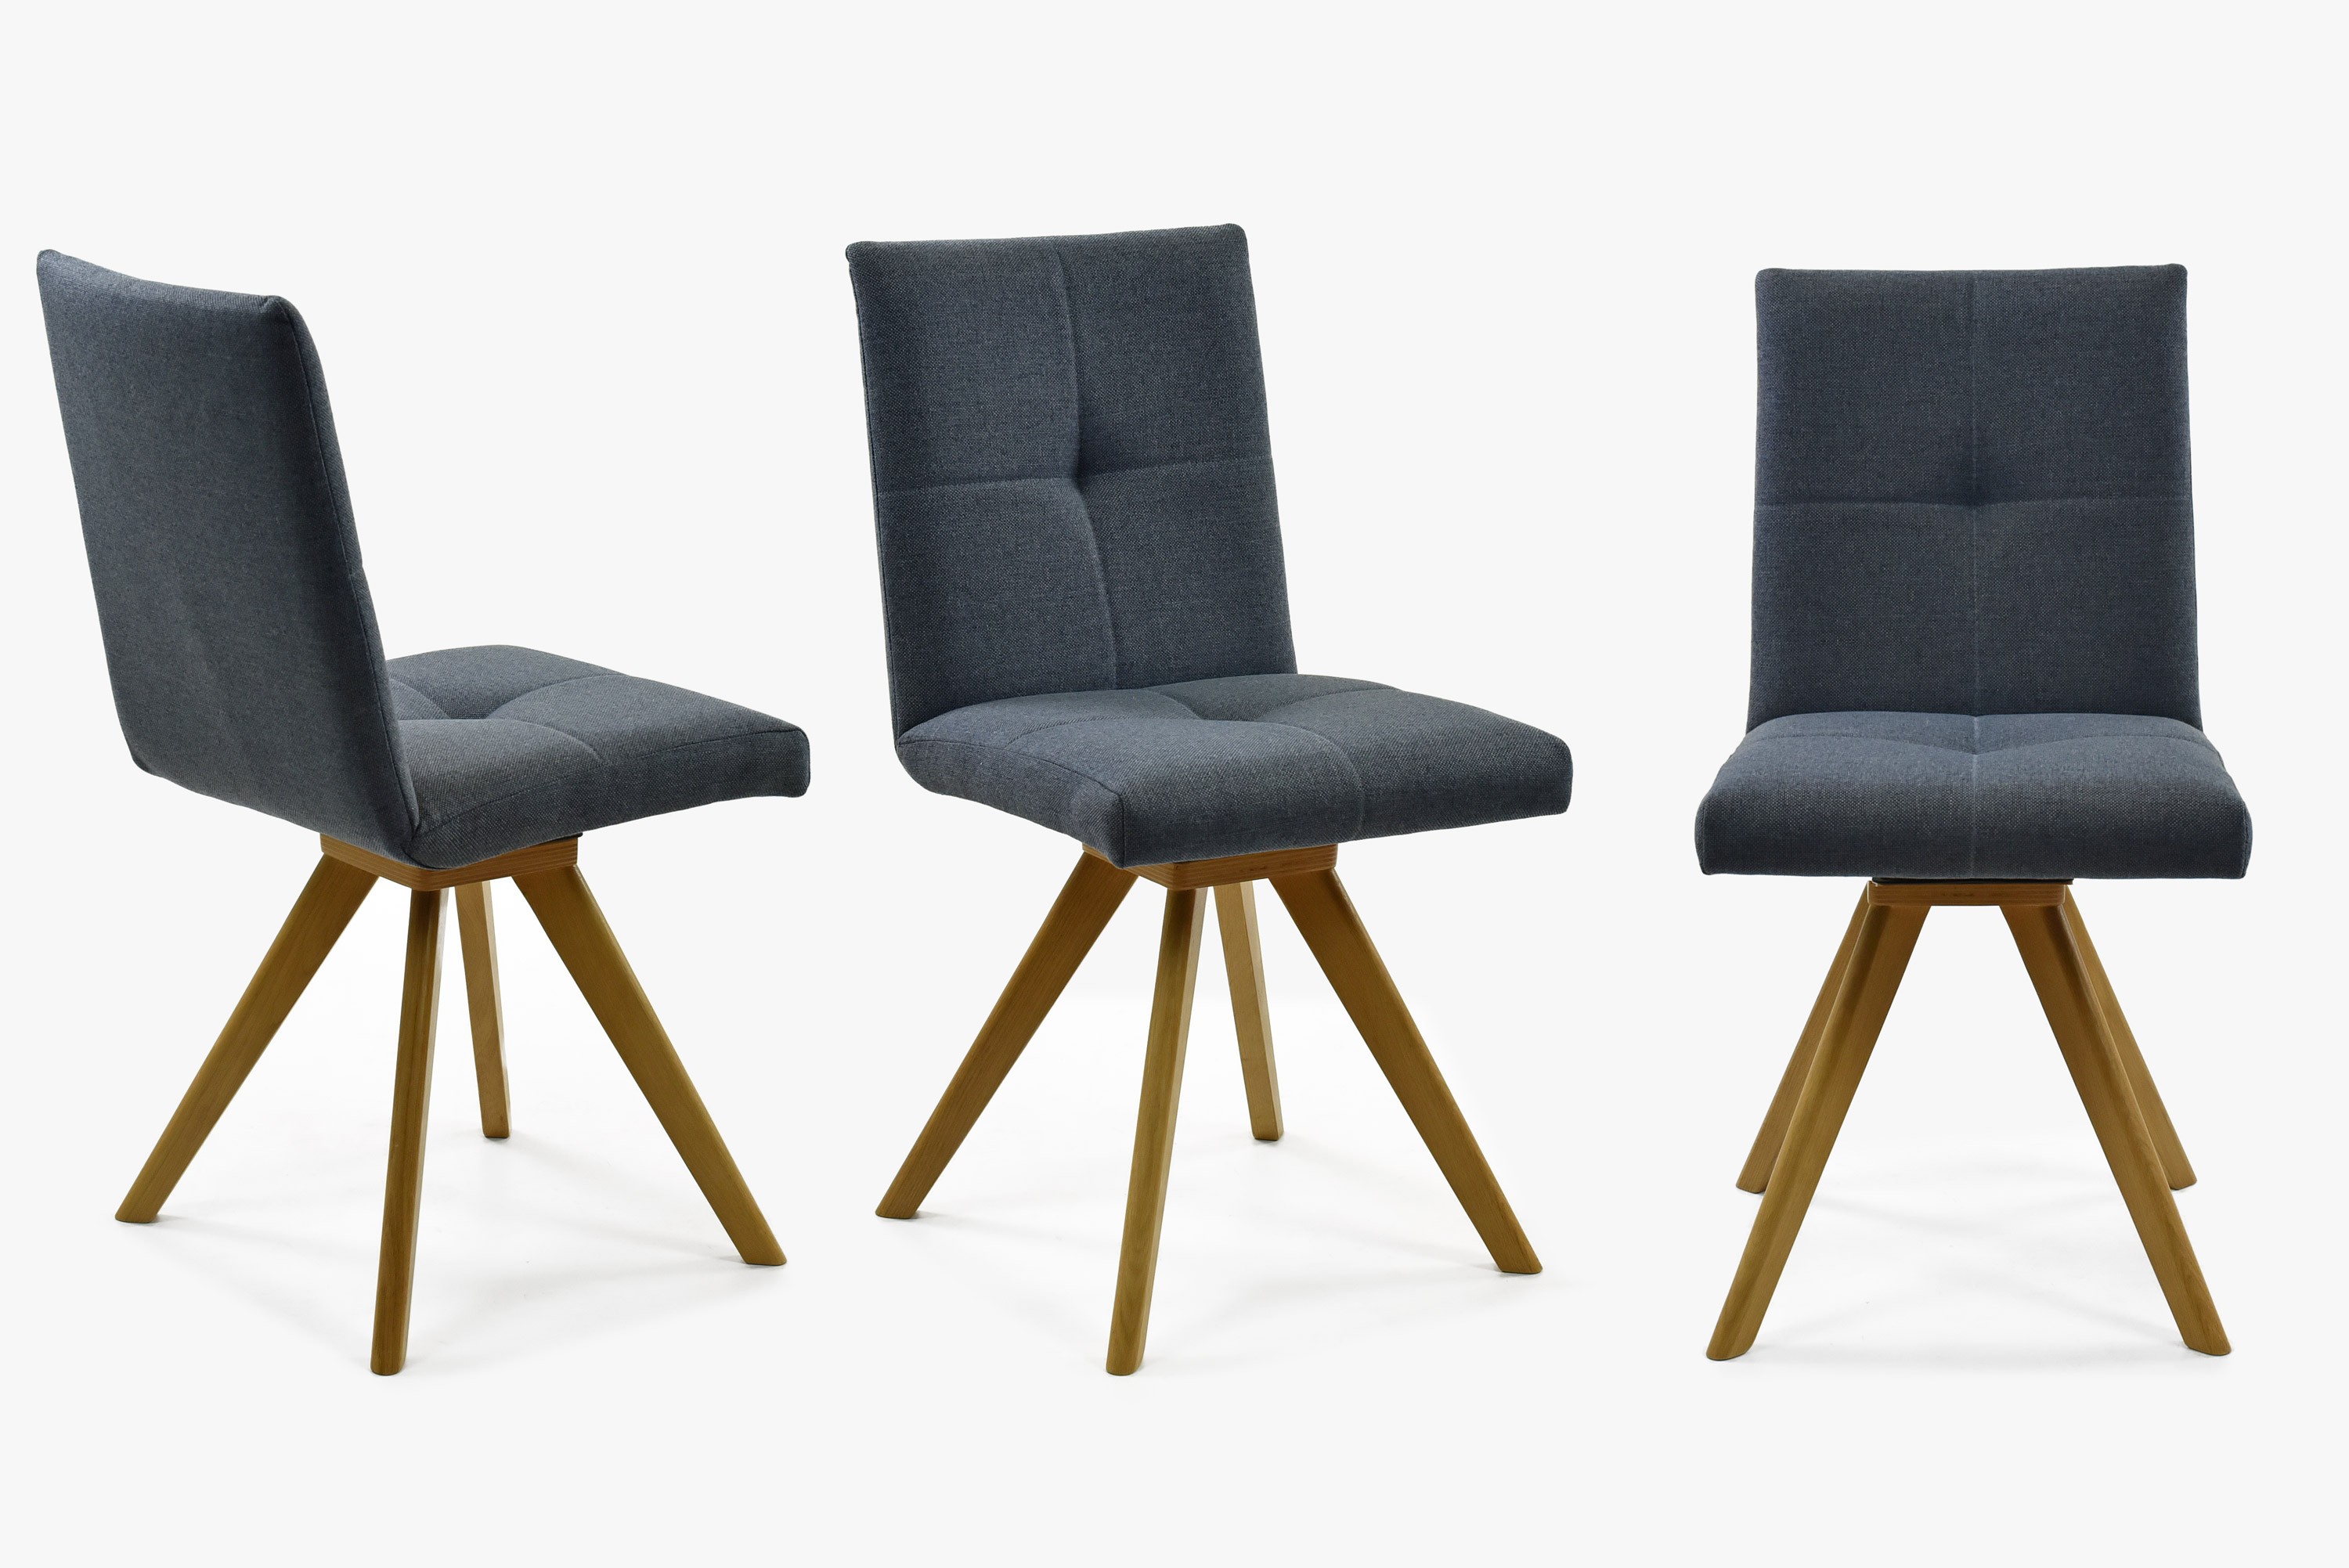 Jídelní židle, dřevěný nohy dub antracit, model Odense sedák otáčecí